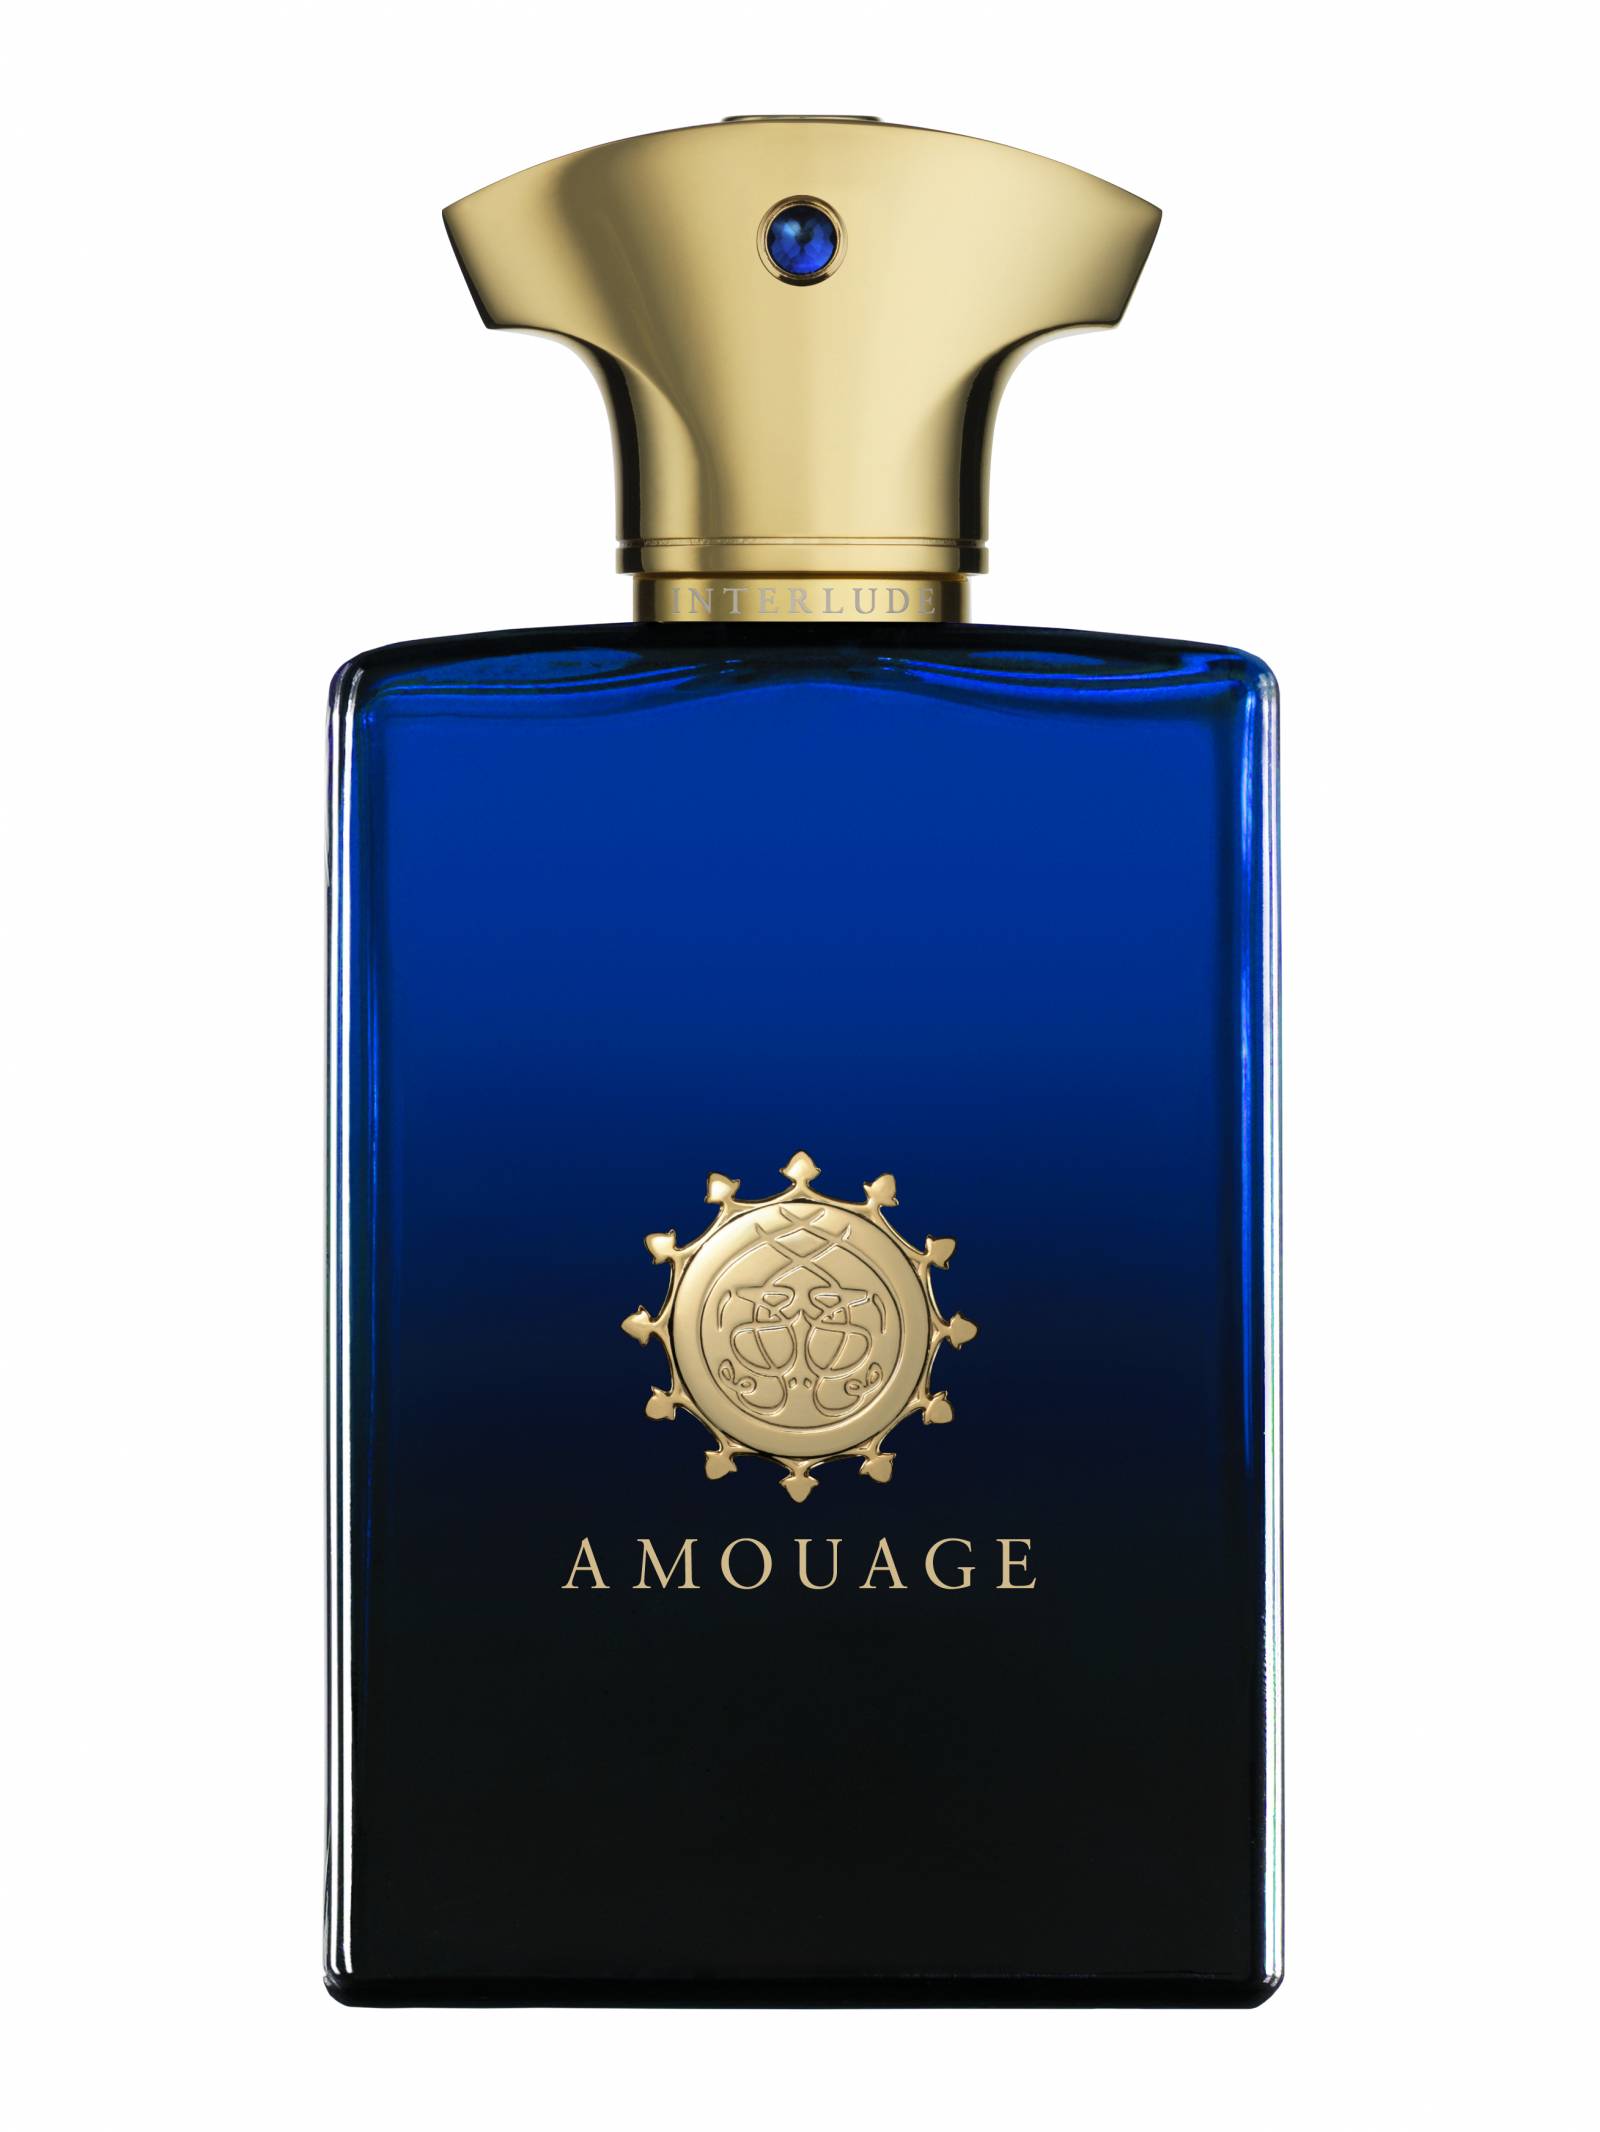 Amouage Interlude Man, 1295 zł/ 100 ml, perfumeriaquality.pl/Fot. materiały prasowe